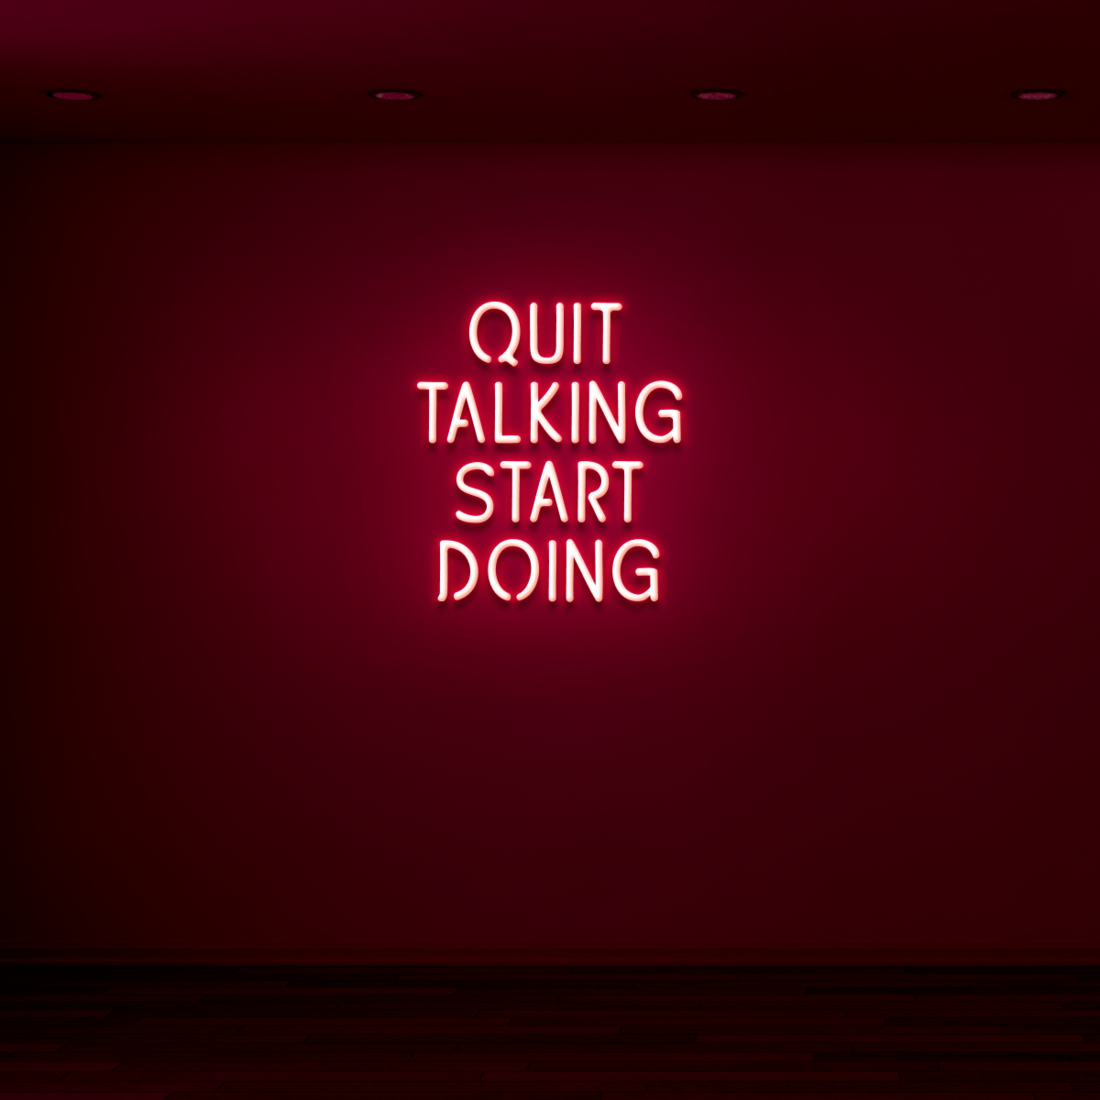 "QUIT TALKING" - NEONIDAS NEONSCHILD LED-SCHILD